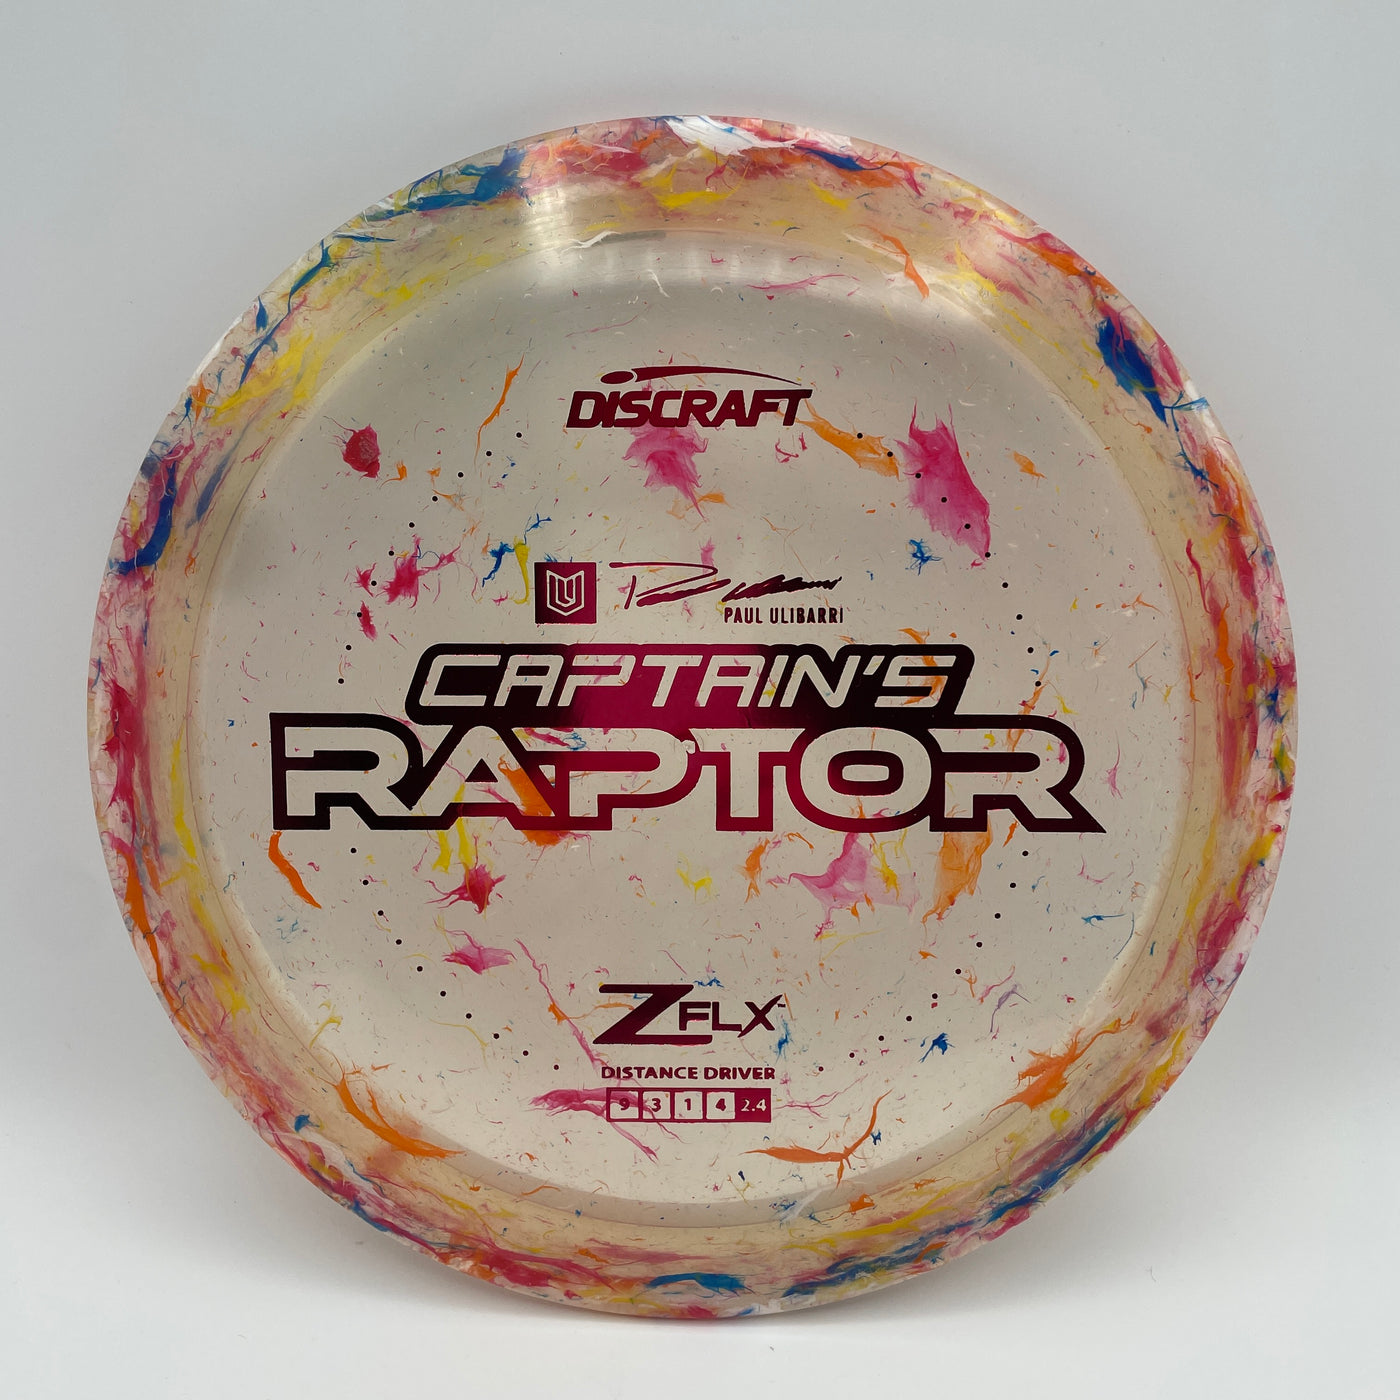 Jawbreaker Z FLX Captain’s Raptor